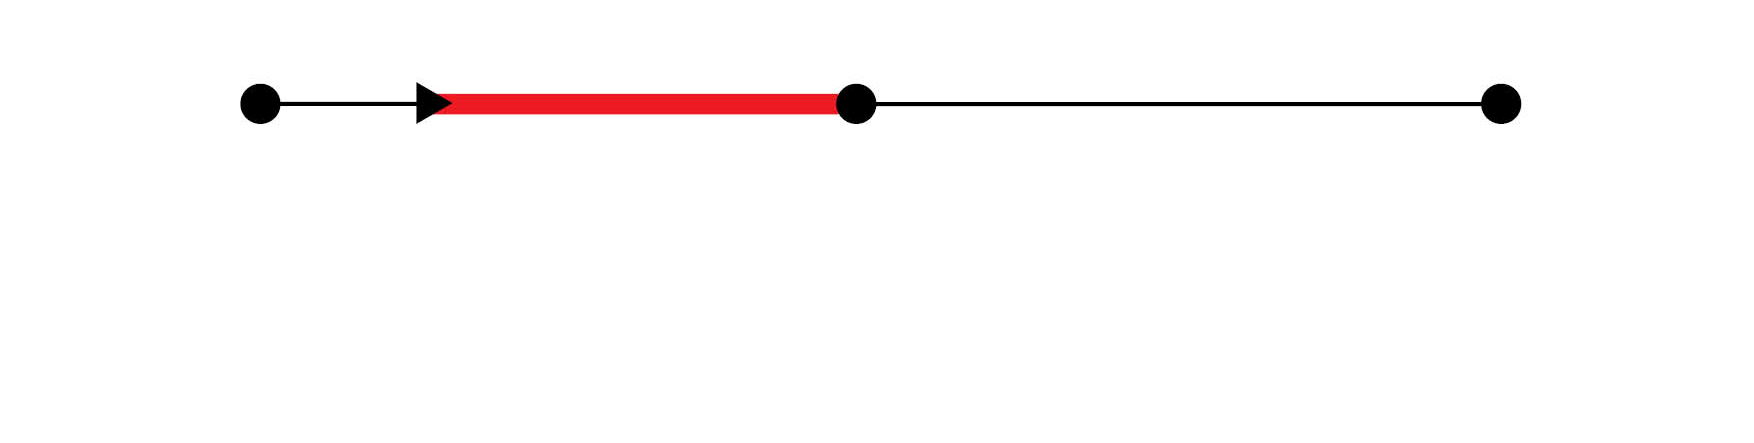 Når du er sykmeldt eller står i fare for å bli det, er det ikke mulig for deg å strekke deg helt fram til midten. Det oppstår et gap. Det er markert med den røde, tykke streken i nederste linje.